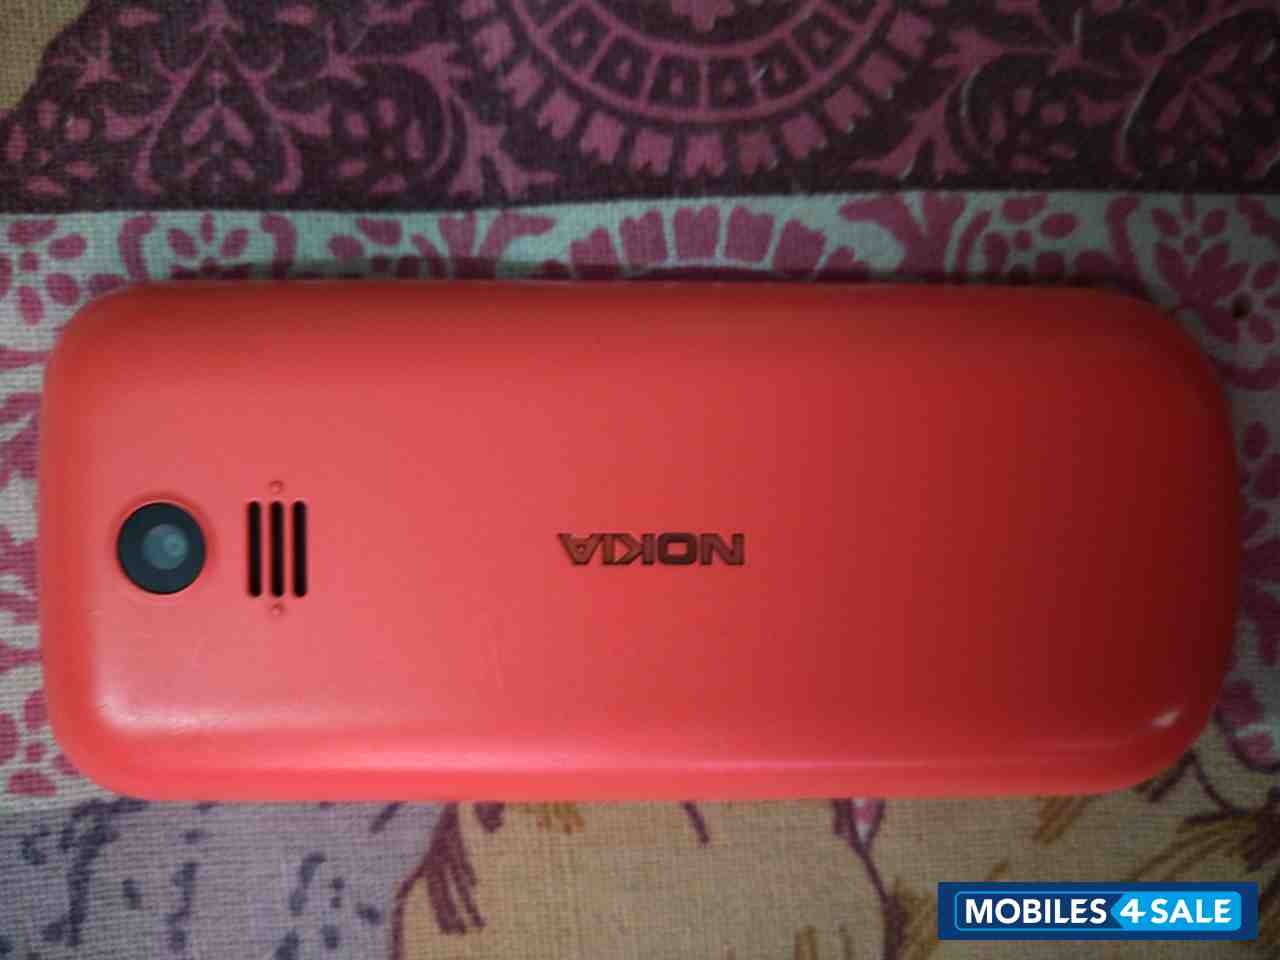 Red Nokia  Nokia 130